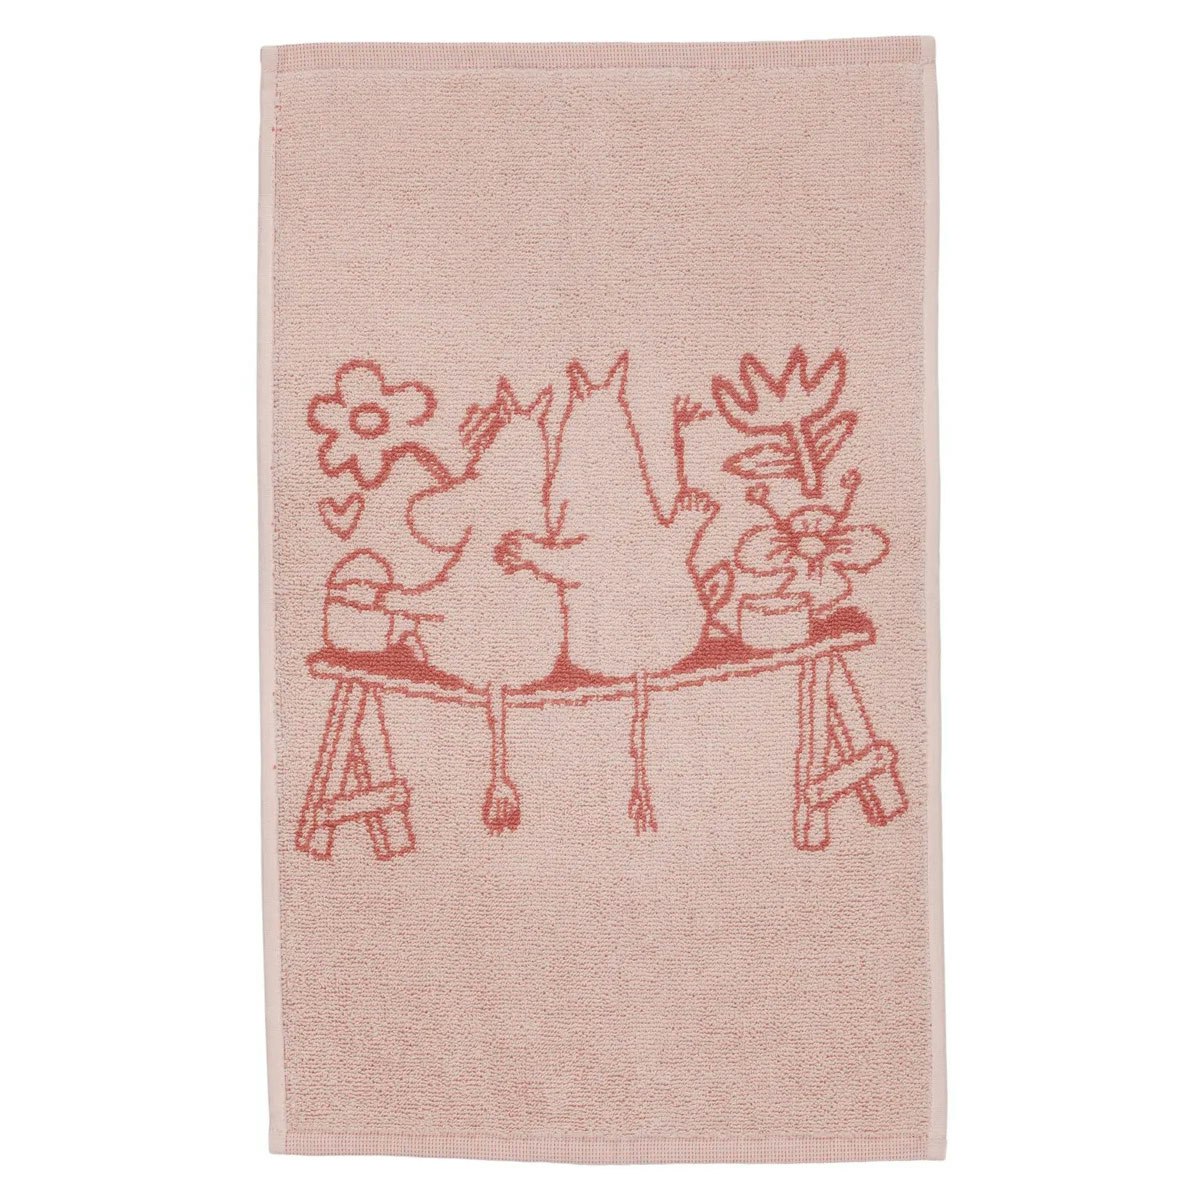 Moomin Handduk 30x50 cm, Kärlek